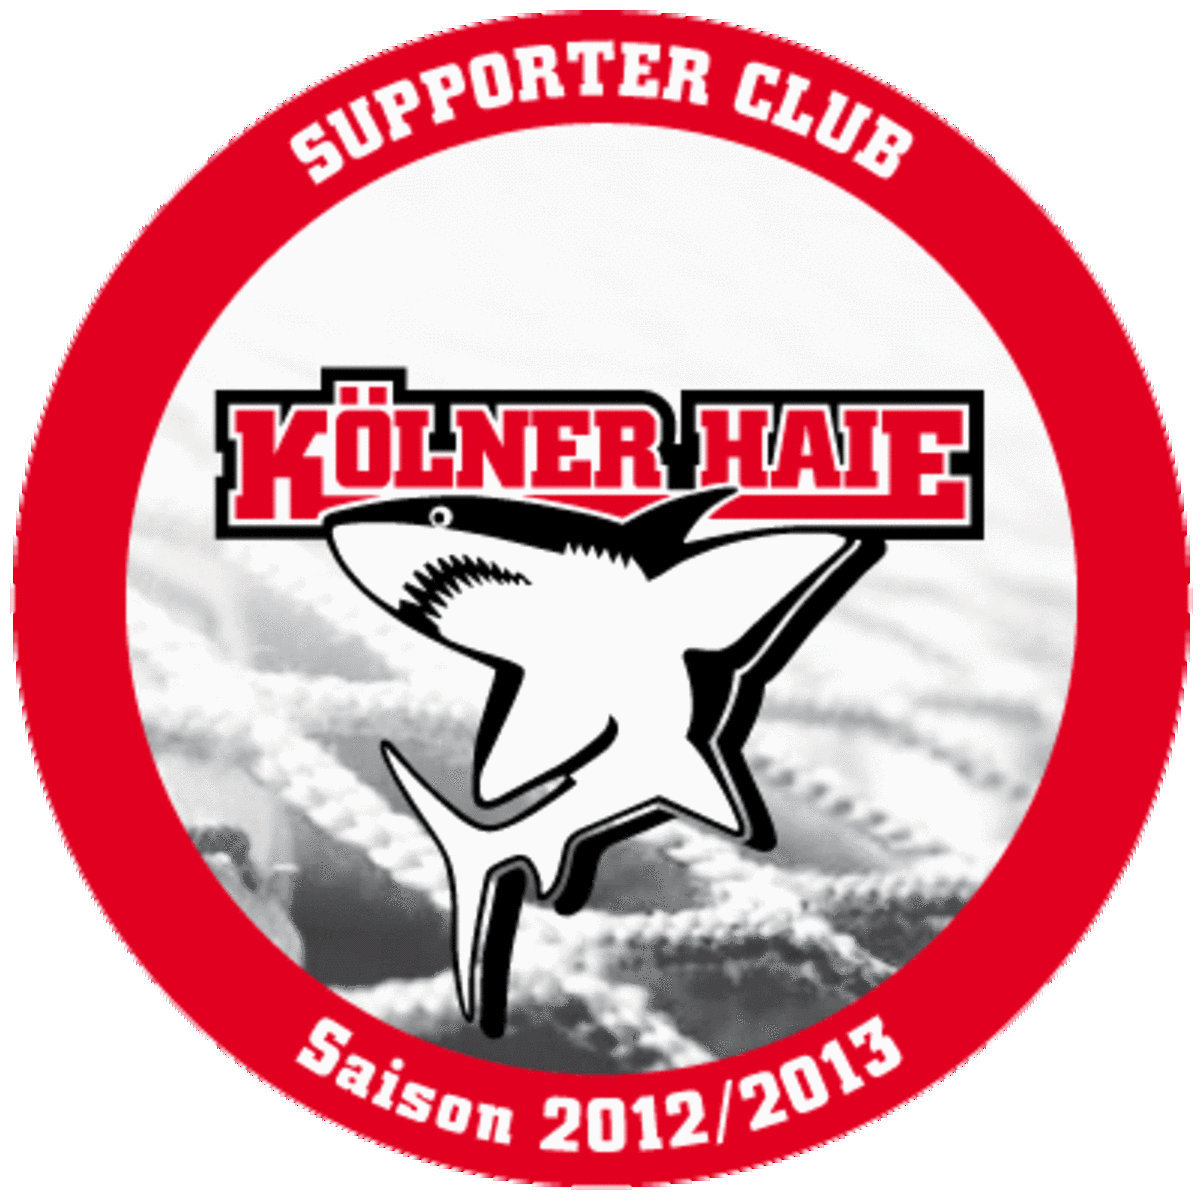 ALDAK als Supporter Club der Kölner Haie 2012/13